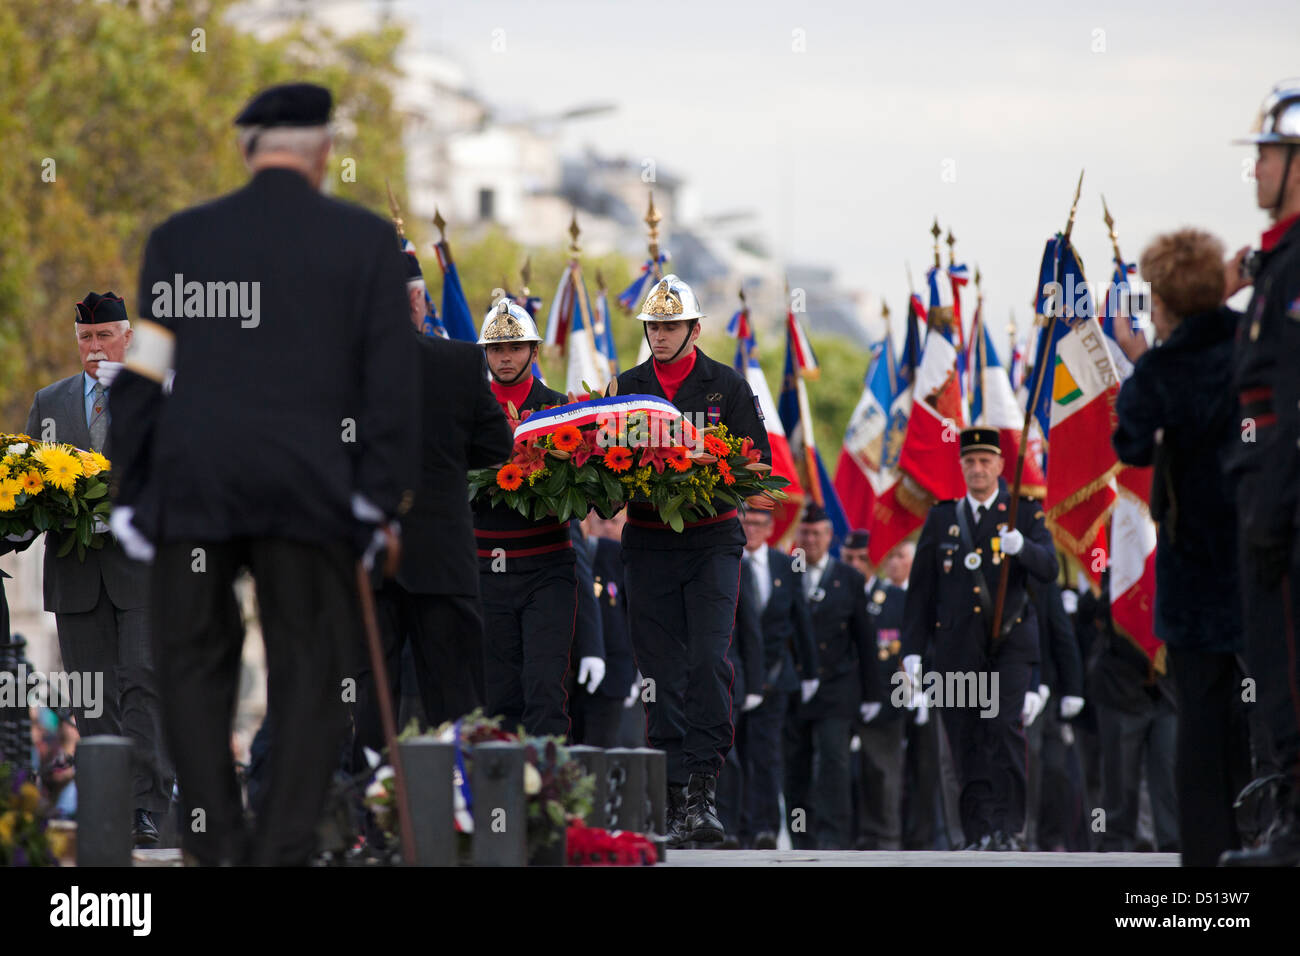 Parade of the Paris Fire Brigade - French Brigade des Sapeurs-Pompiers de Paris on Champs-Élysées and at Arc de Triomphe; Stock Photo